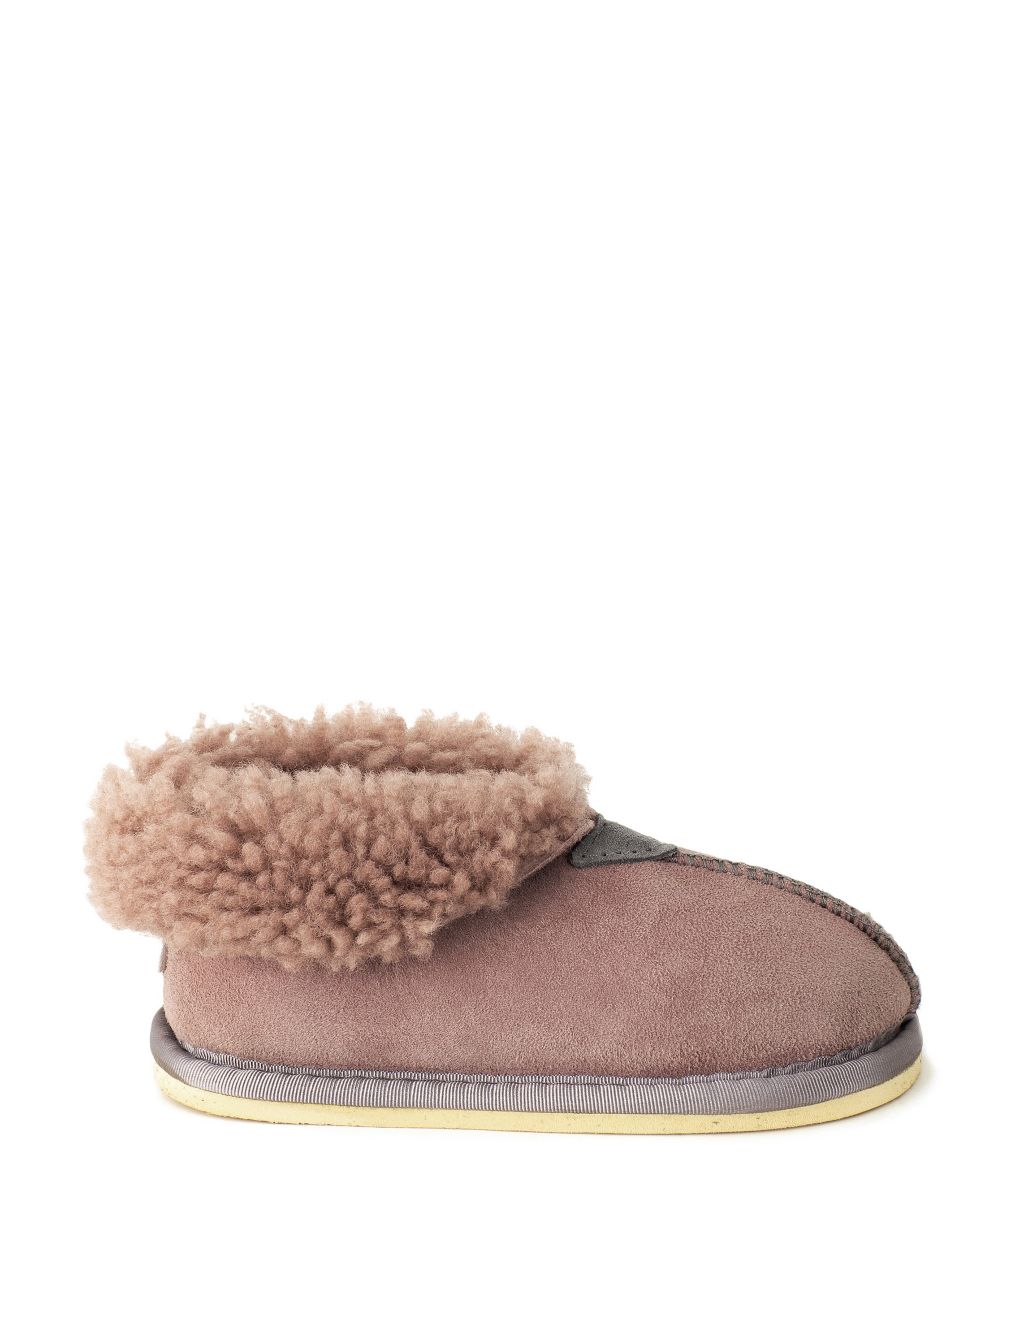 Kids' Sheepskin Slipper Boots